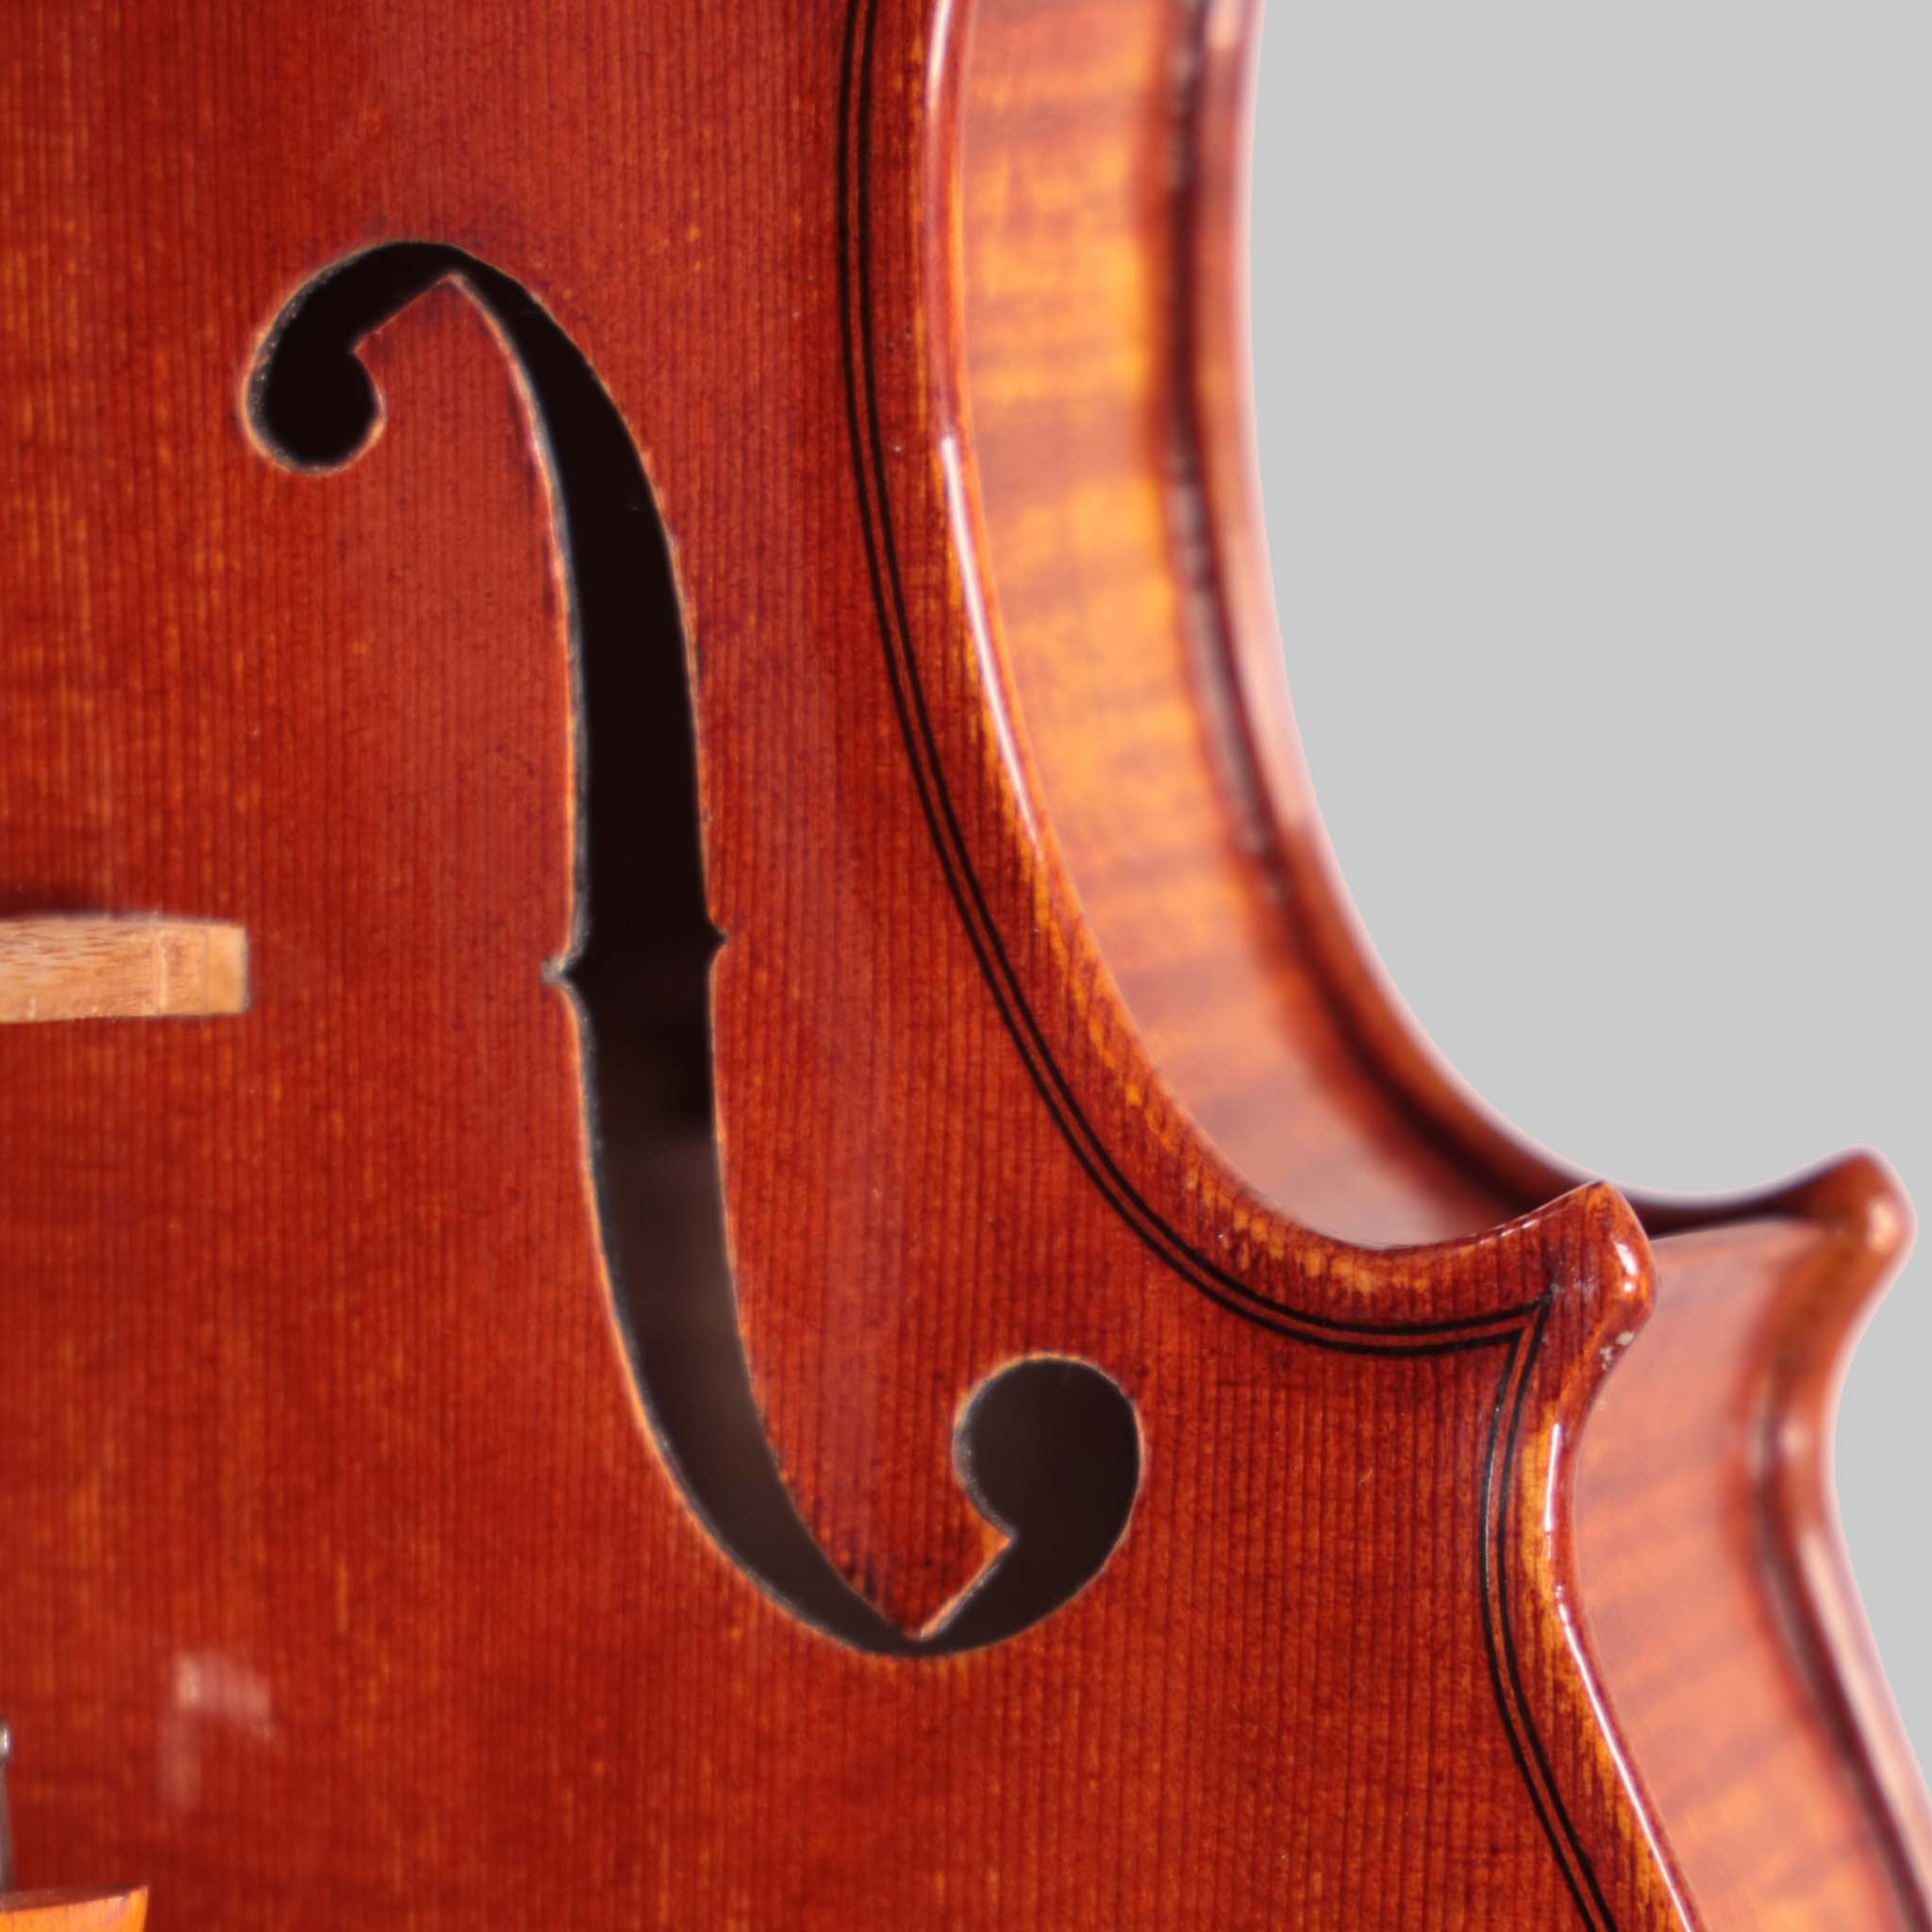 A.M. Bilva, Florida 'Stradivari' Violin 2022